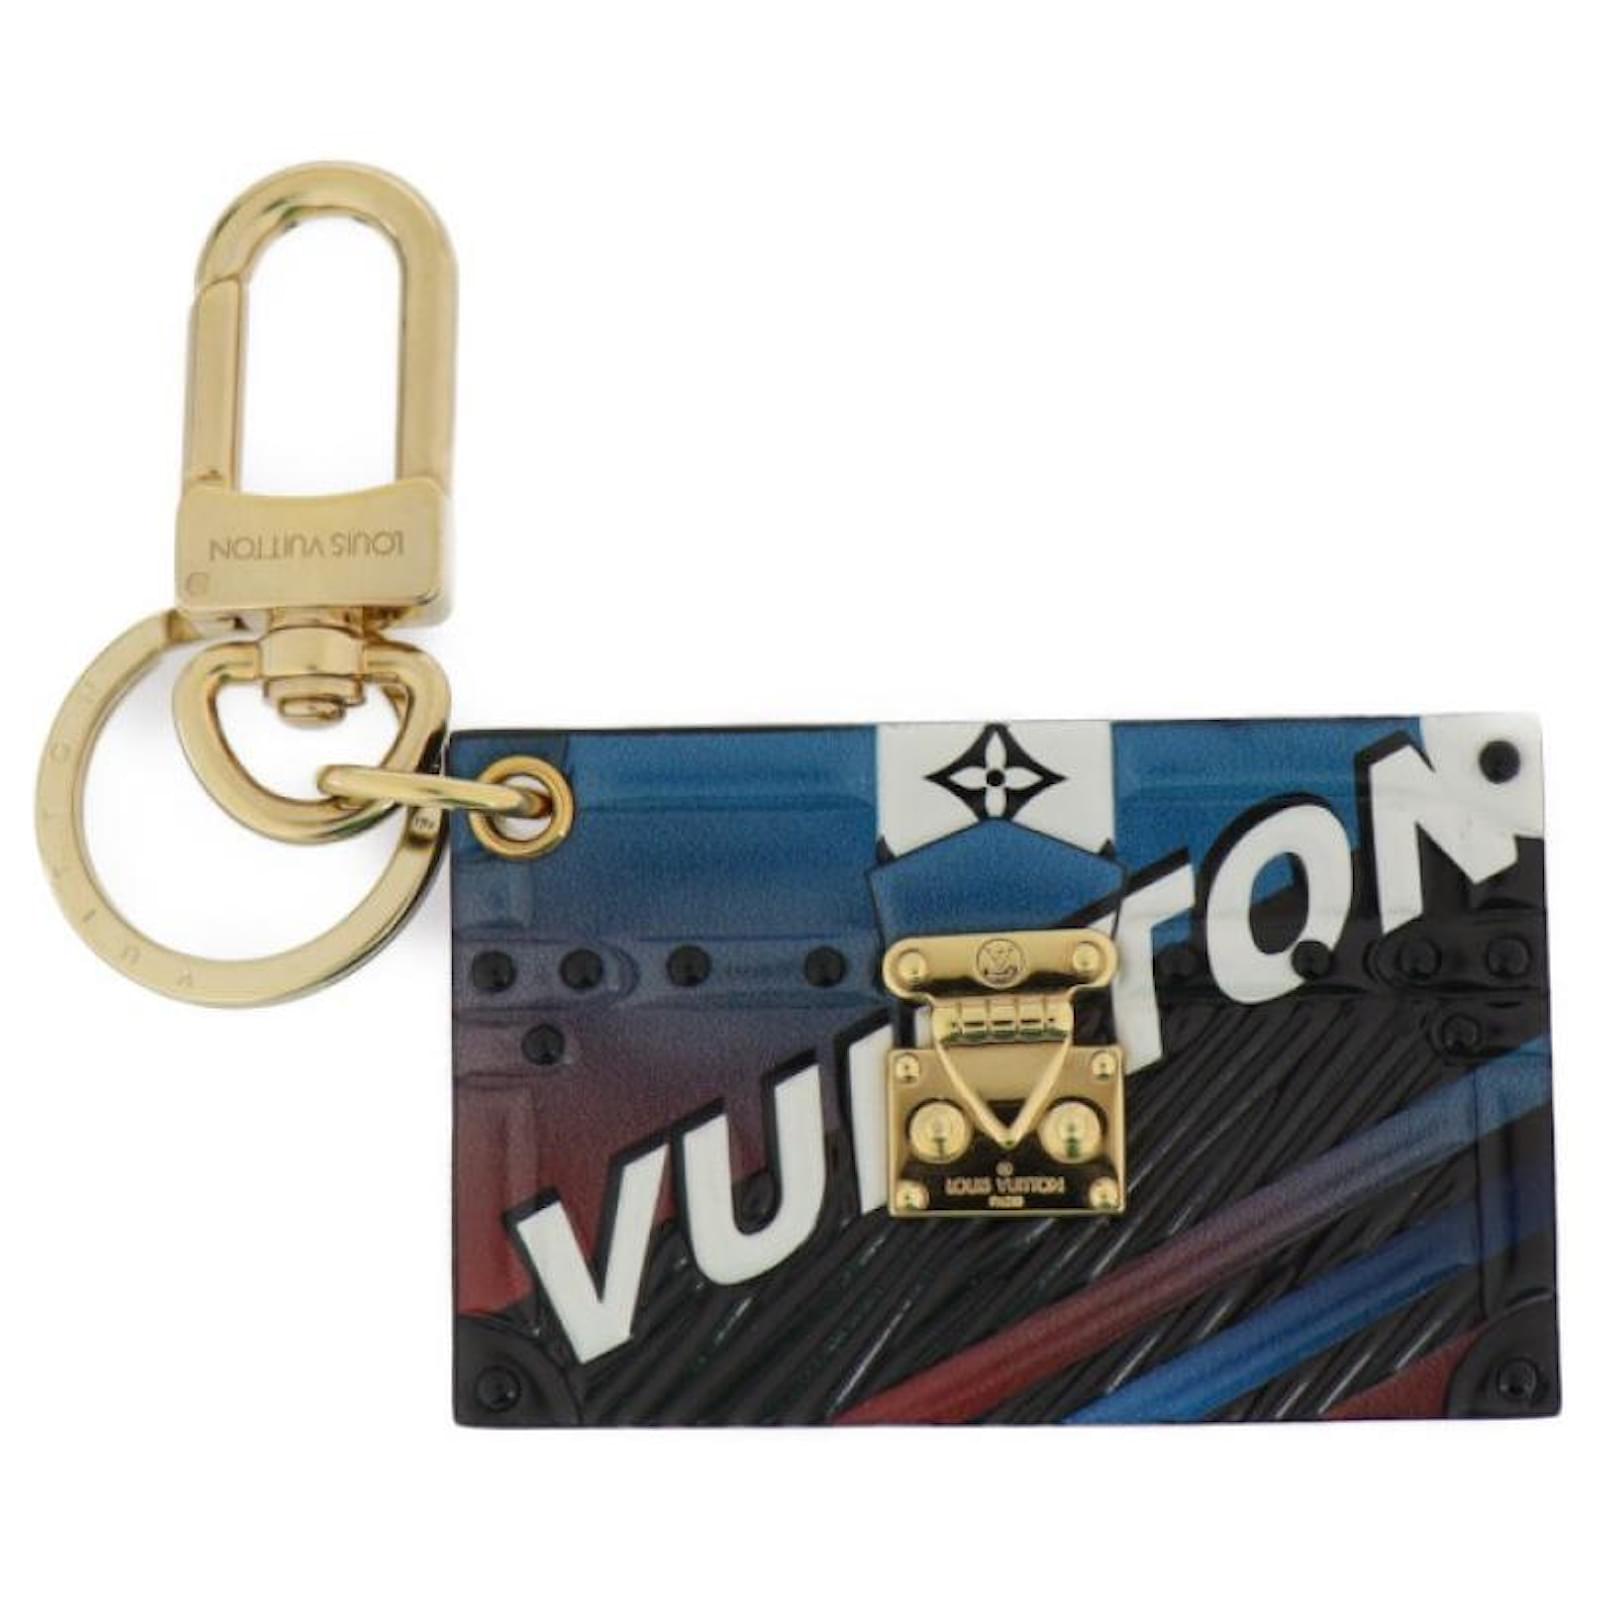 Louis Vuitton 2017 Cruise Collection